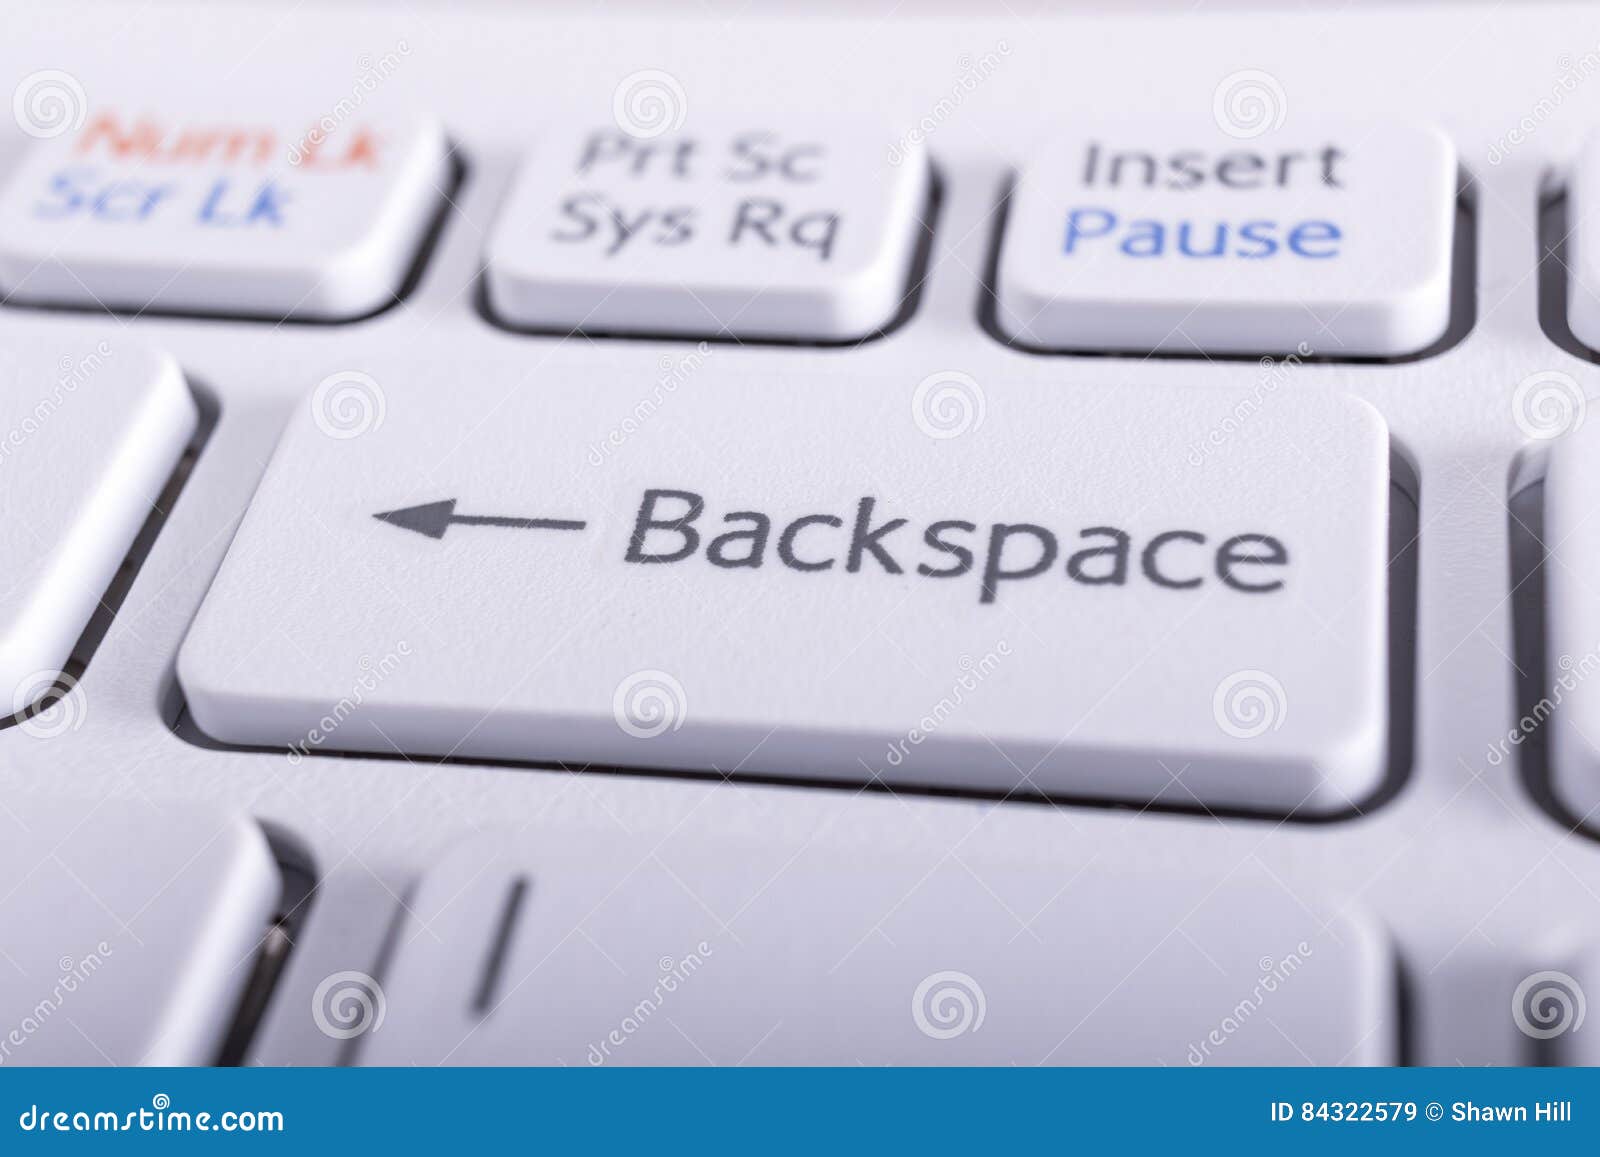 Backspace это в информатике. Клавиши бэкспейс на клавиатуре. Кнопка Backspace. Клавиша Backspace на клавиатуре. Кнопка бекспейс на клавиатуре.